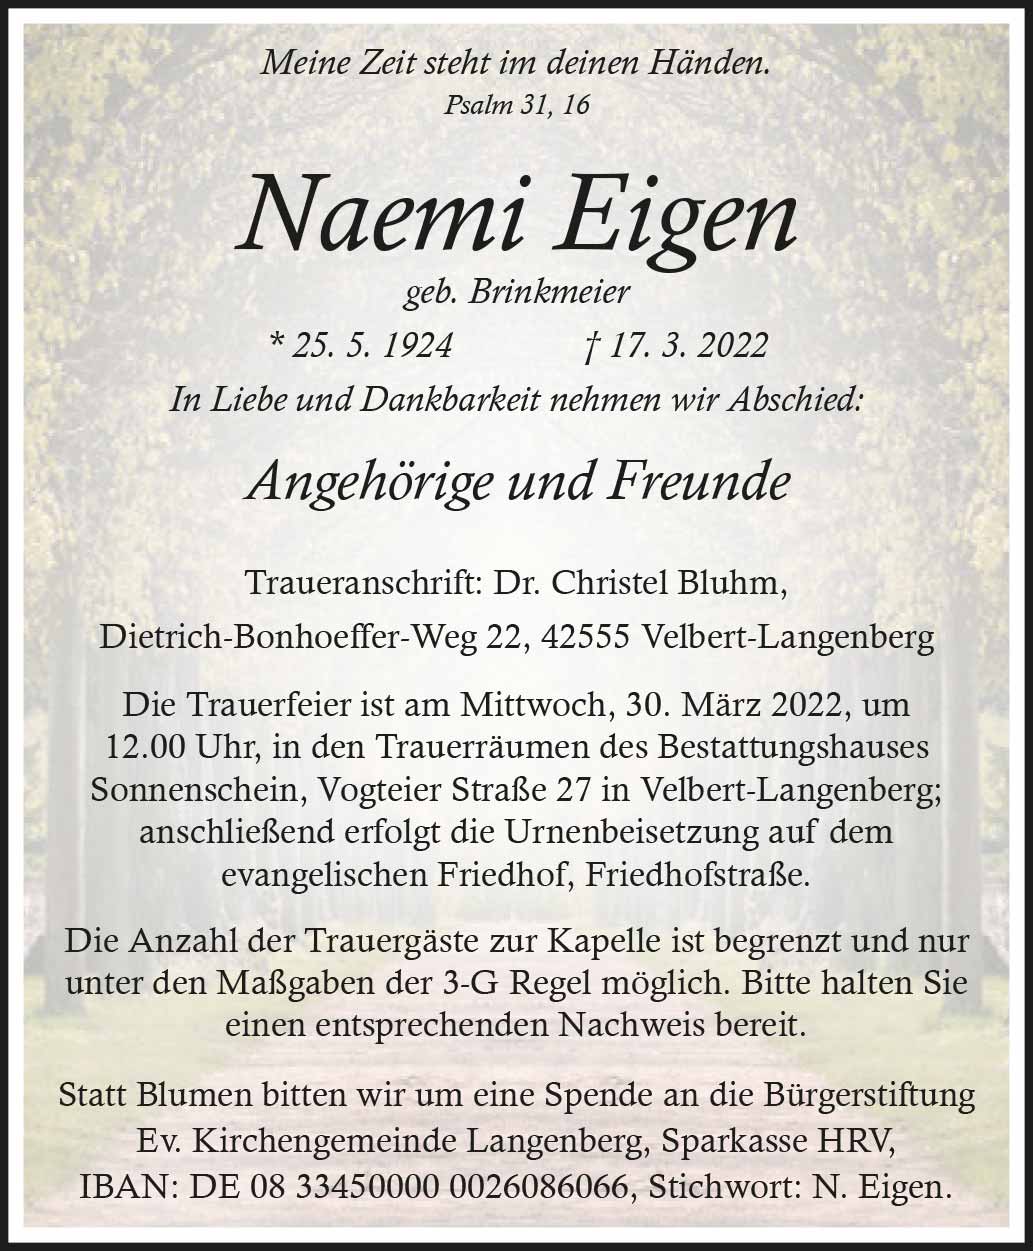 Naemi Eigen † 17. 3. 2022